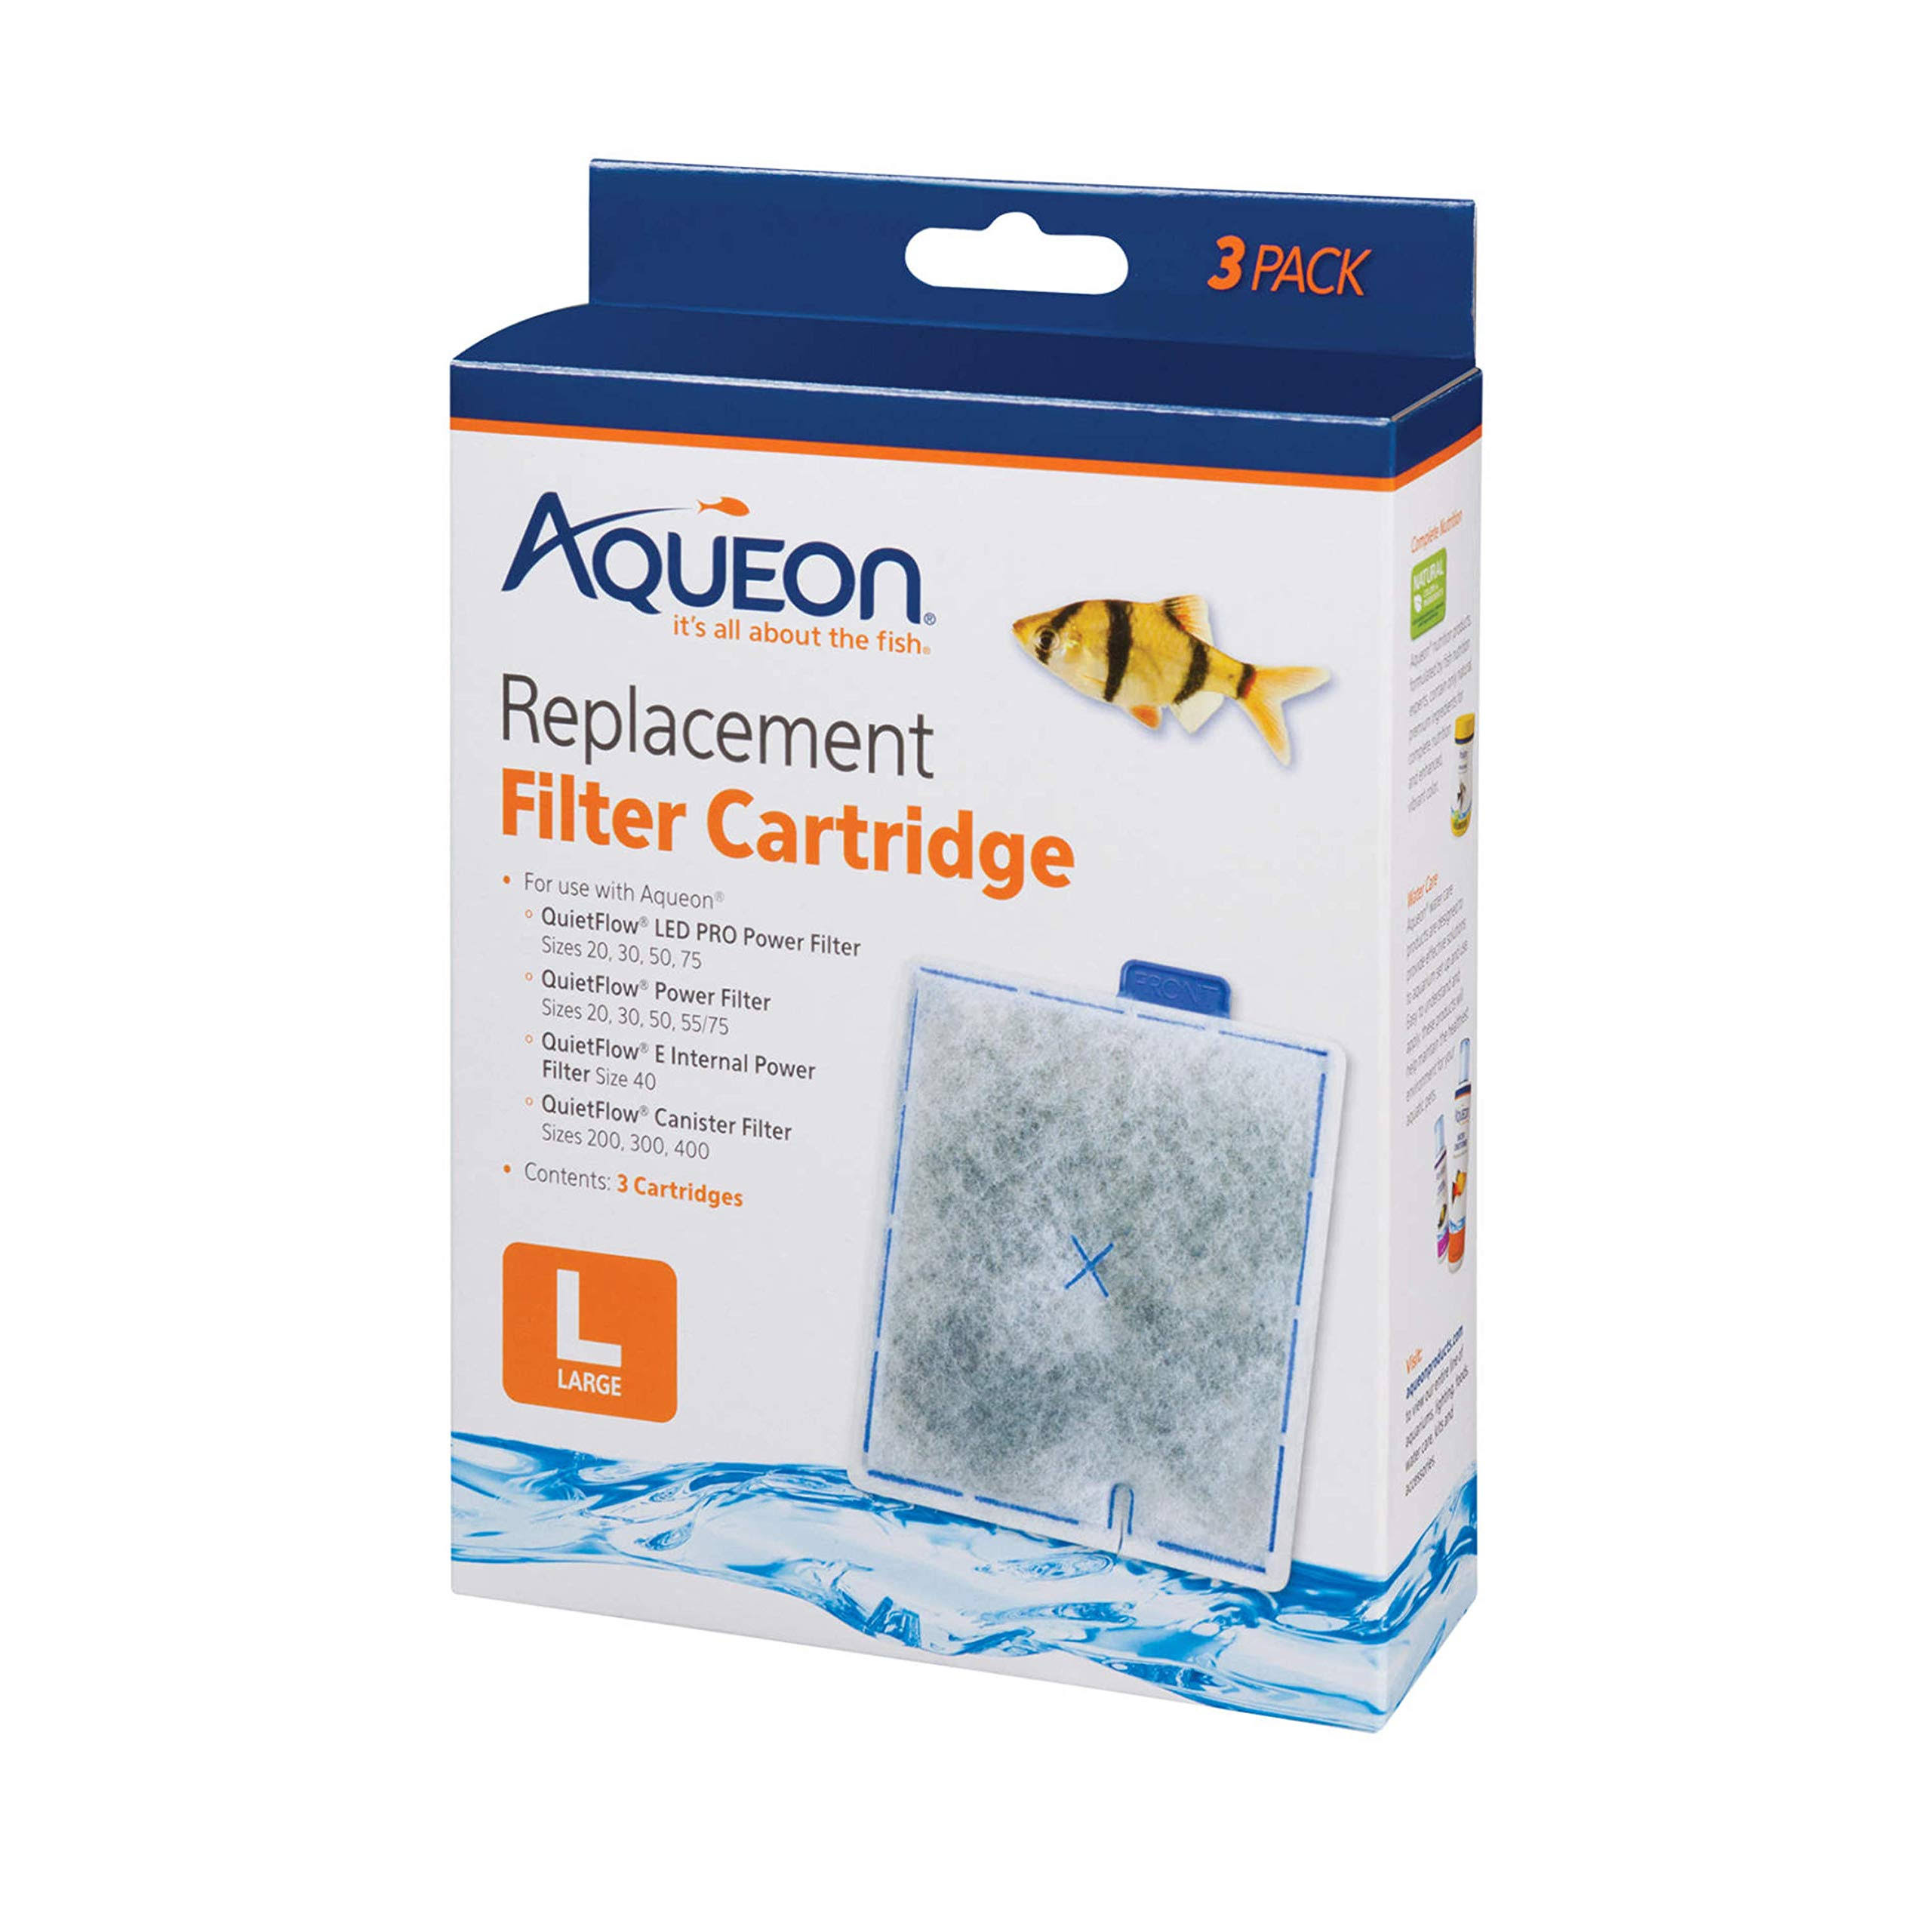 Aqueon Quiet Flow Replacement Filter Cartridges - Large, 3 Pack